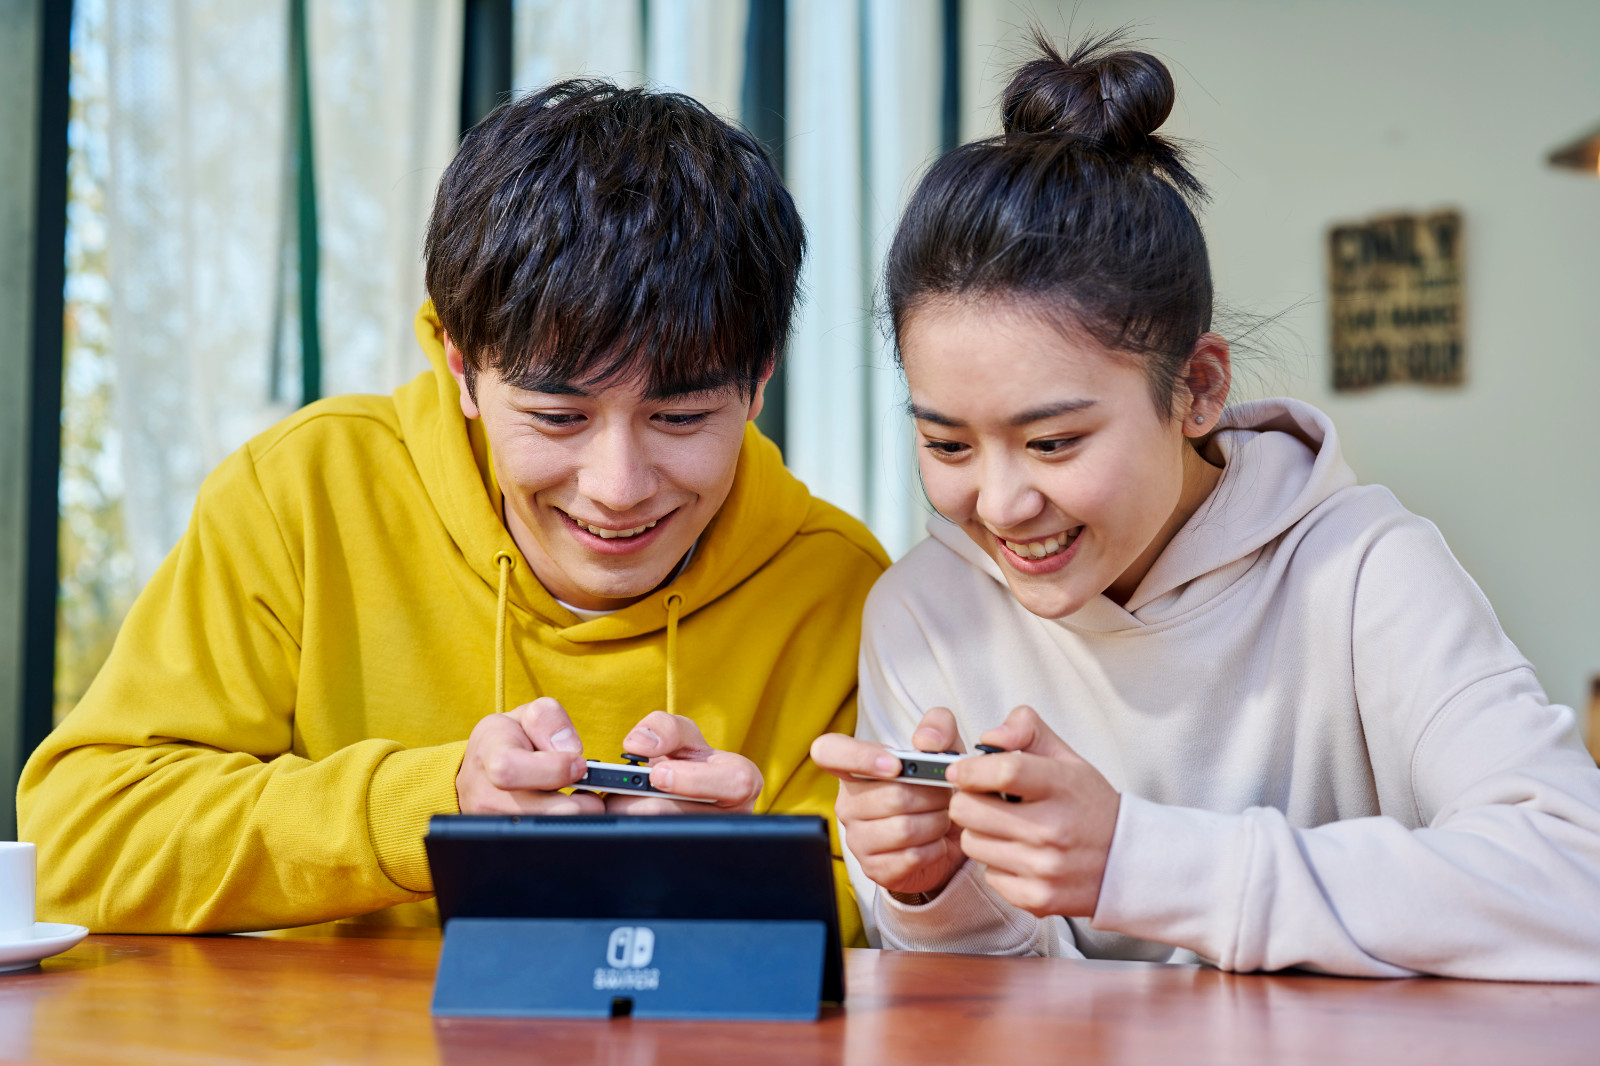 国行任天堂Switch OLED今日发售 满足用户多重娱乐需求